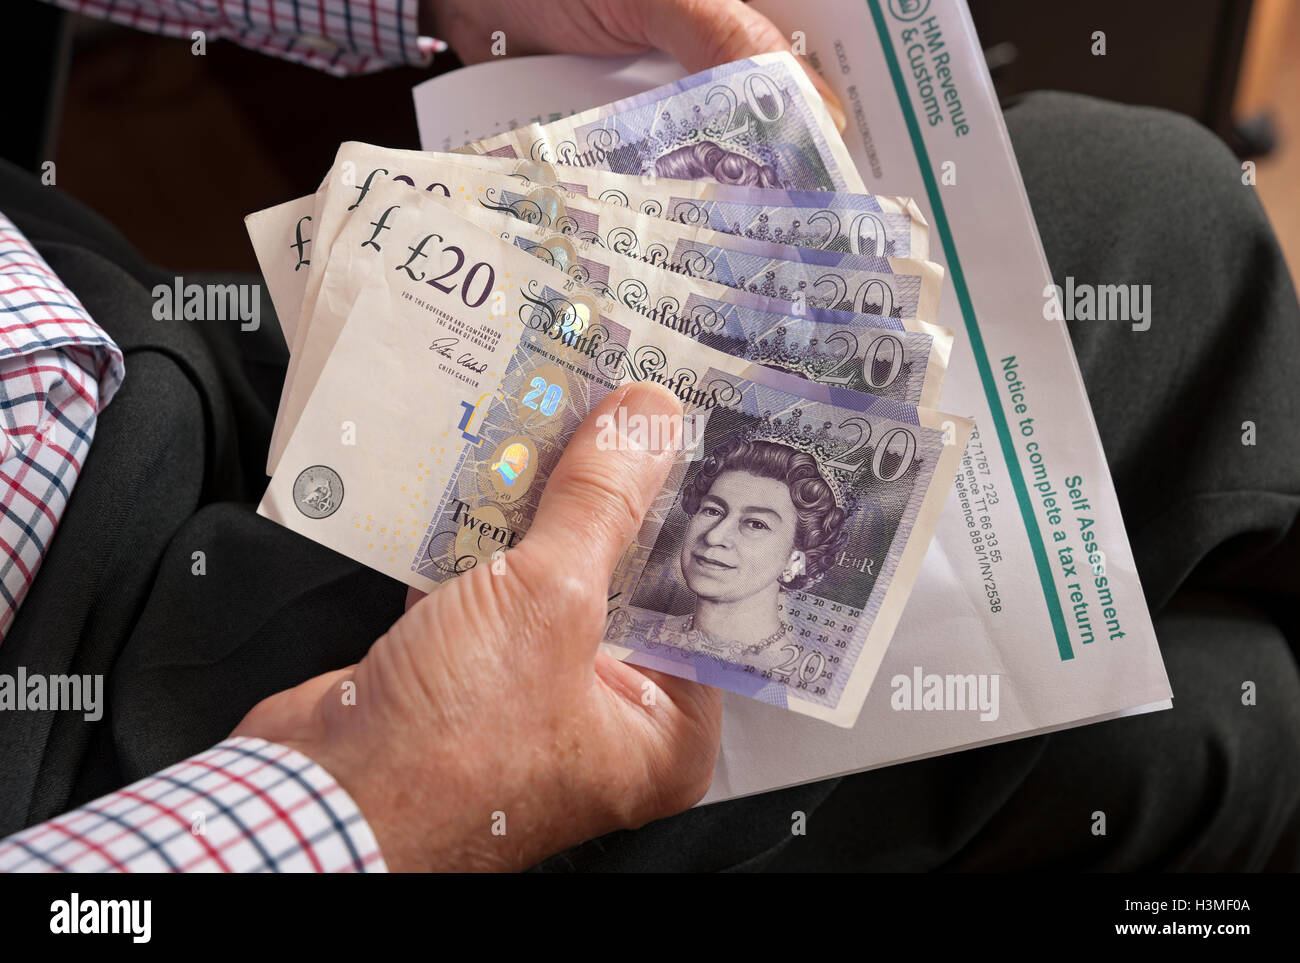 Gros plan de la personne homme détenant vingt billets de banque en argent anglais billets en espèces et déclaration d'auto-évaluation Angleterre Royaume-Uni Grande-Bretagne Banque D'Images